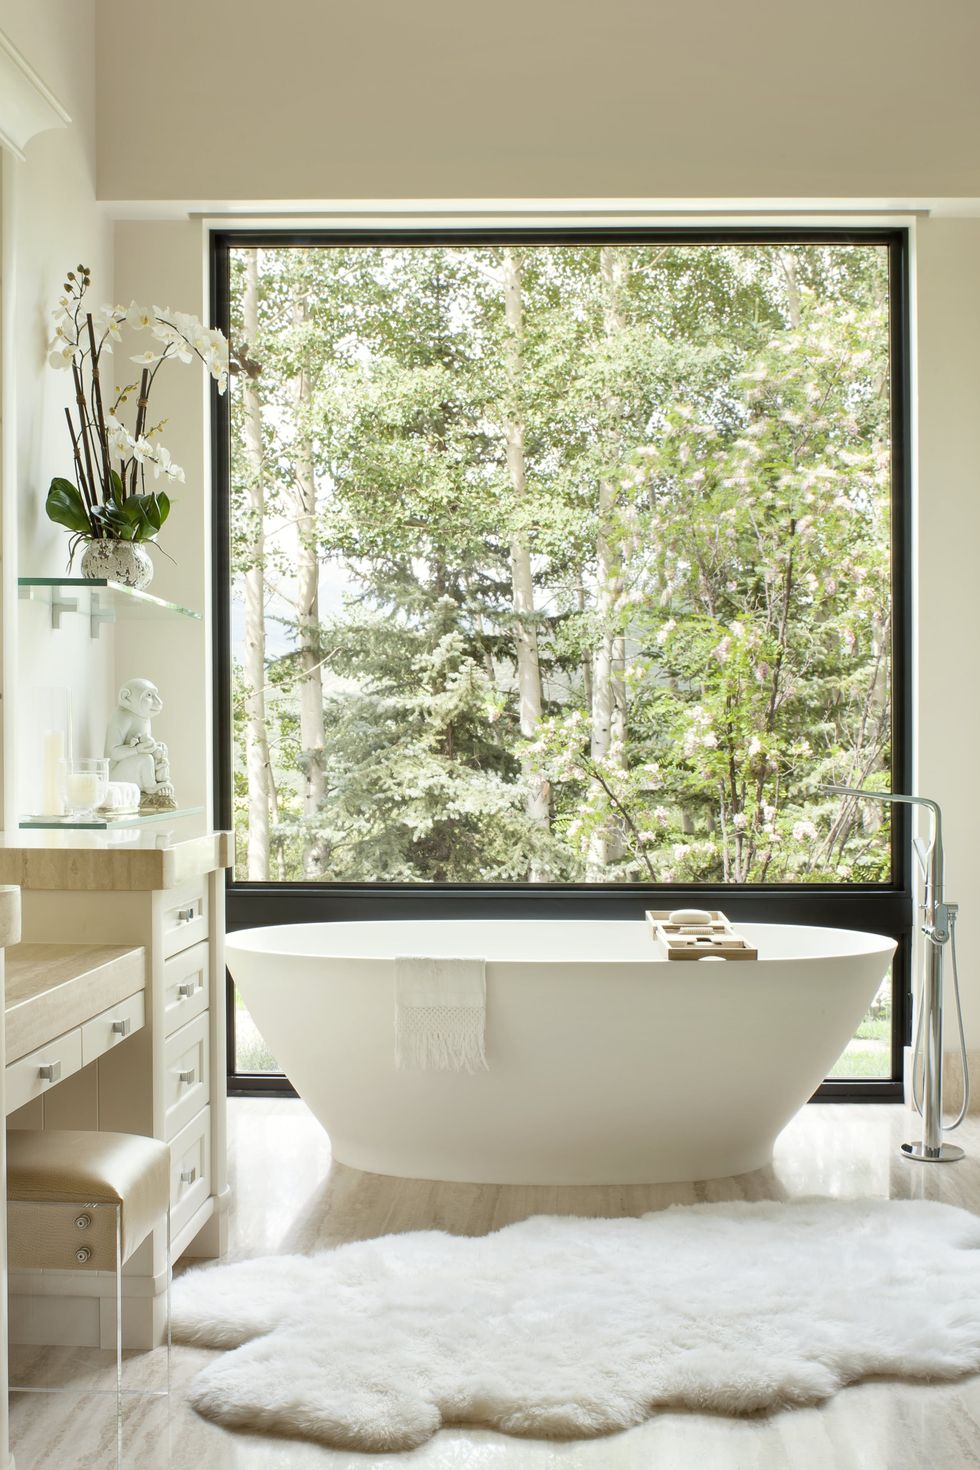 Dự án thiết kế của Brewster McLeod Architects mang đến cho chủ nhân một cảm giác thư giãn tuyệt đối. Từ trong phòng tắm, bạn có thể phóng tầm mắt ngắm nhìn cảnh khu rừng sinh động, thay đổi mỗi mùa trong năm vô cùng thi vị.